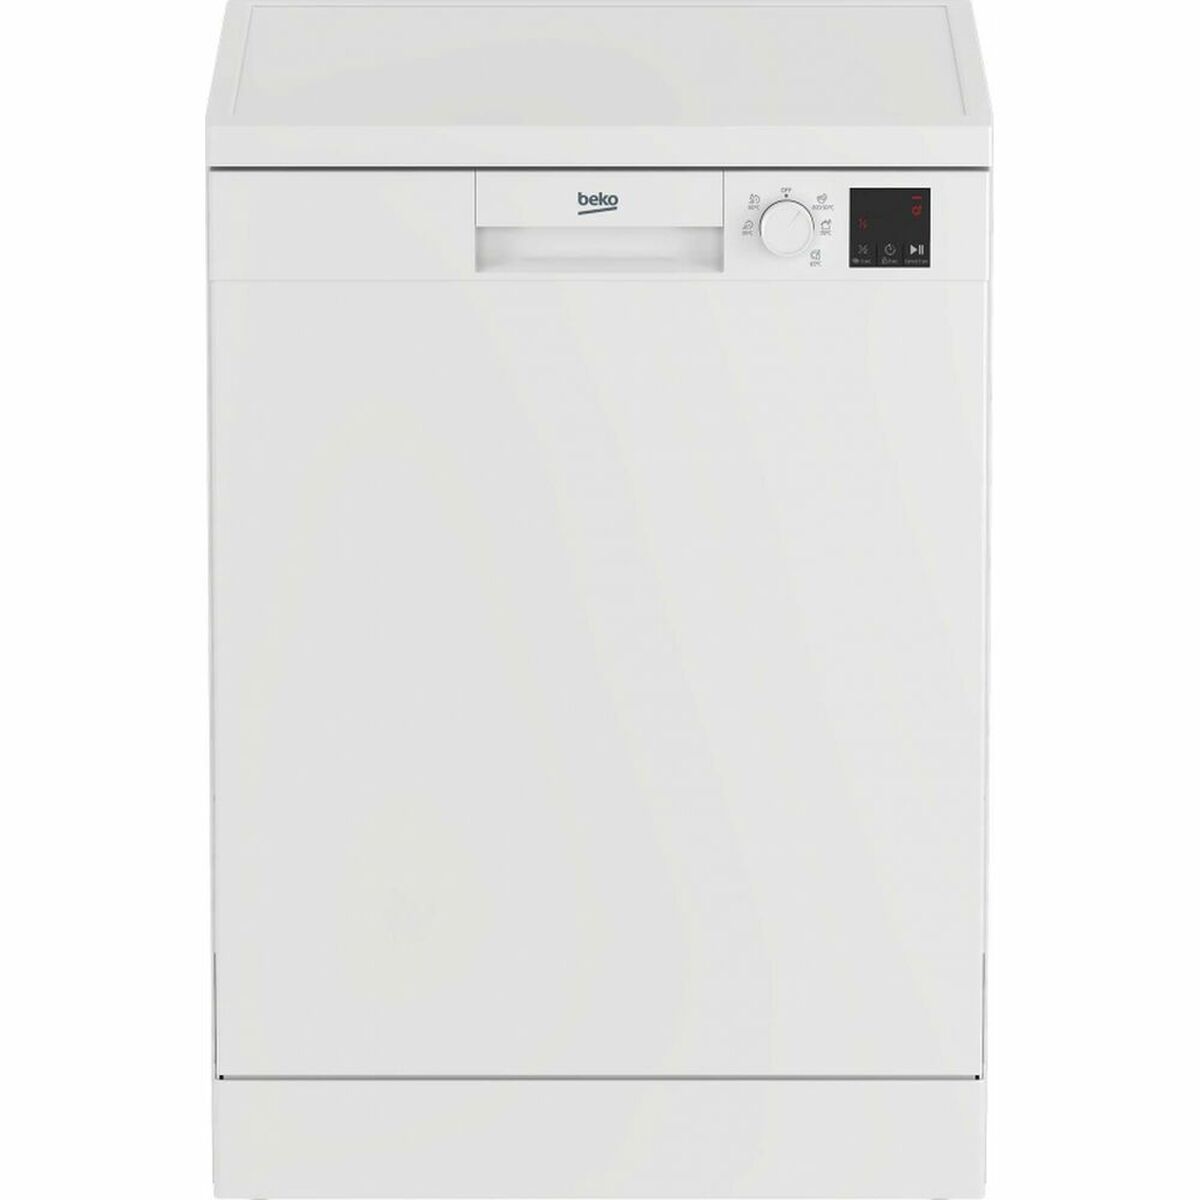 Dishwasher BEKO DVN05320W White (60 cm)